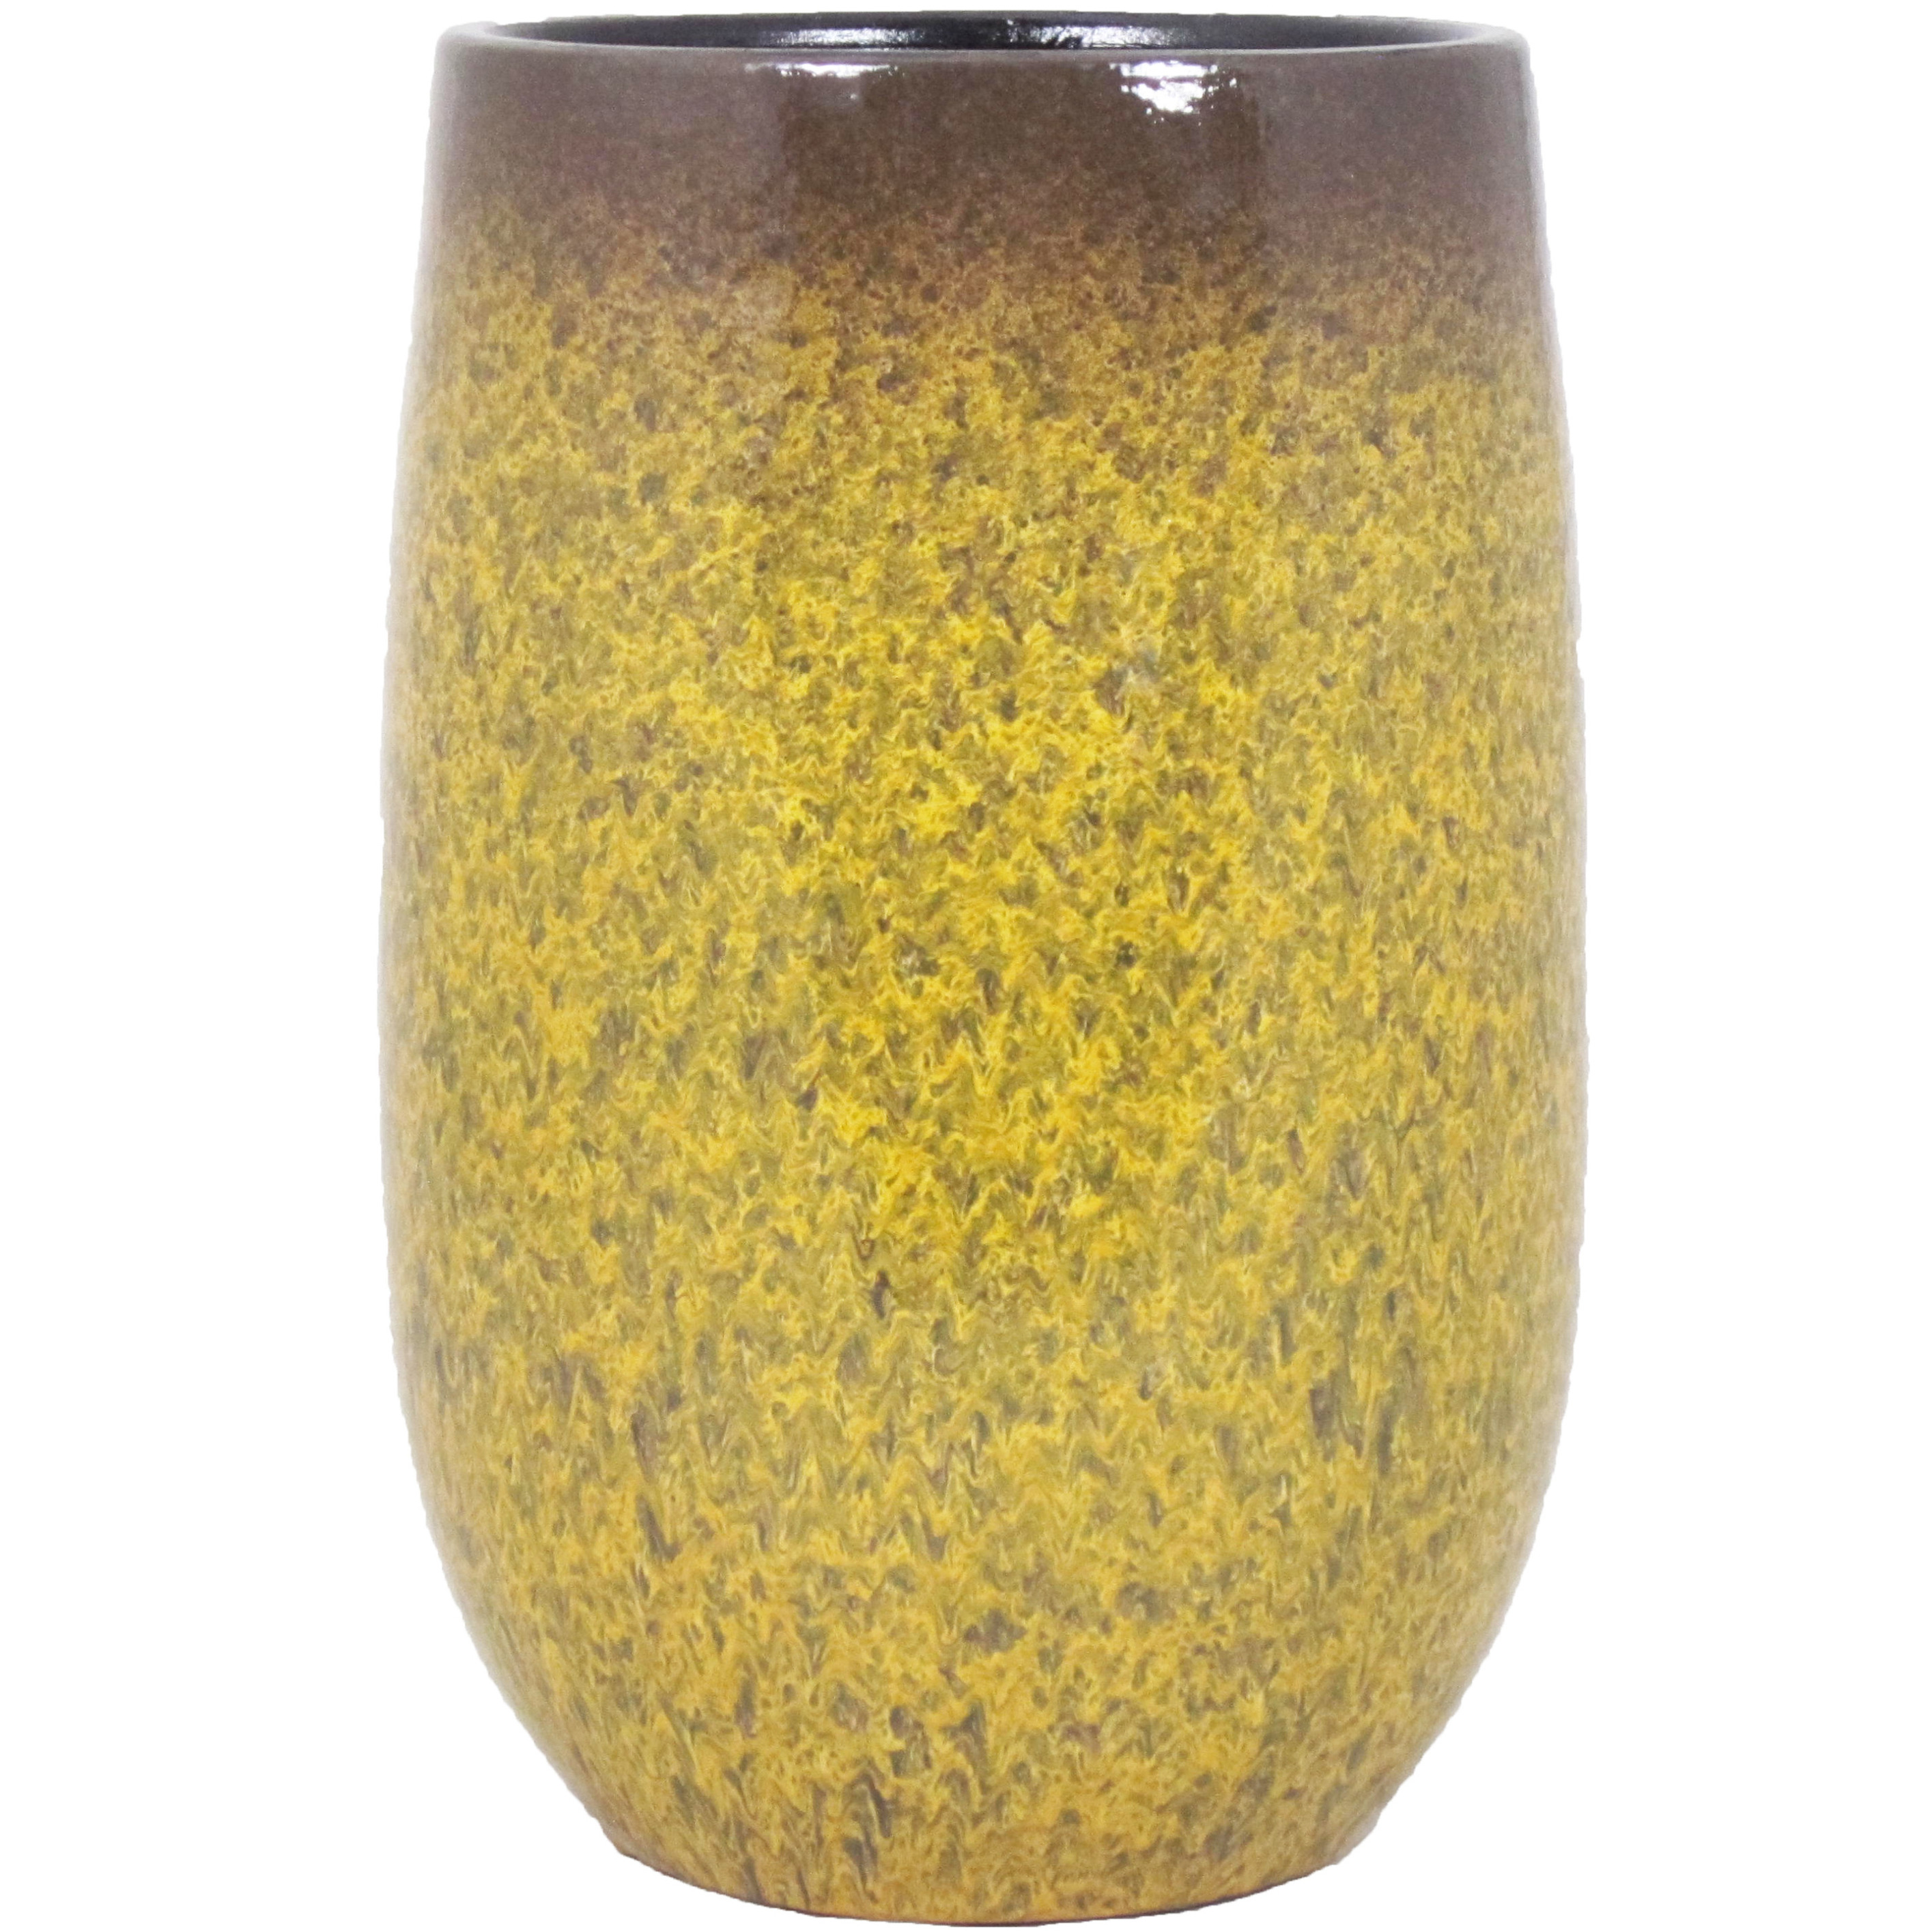 Floran Bloempot vaas goud geel flakes keramiek voor bloemen/planten H40 x D22 cm -